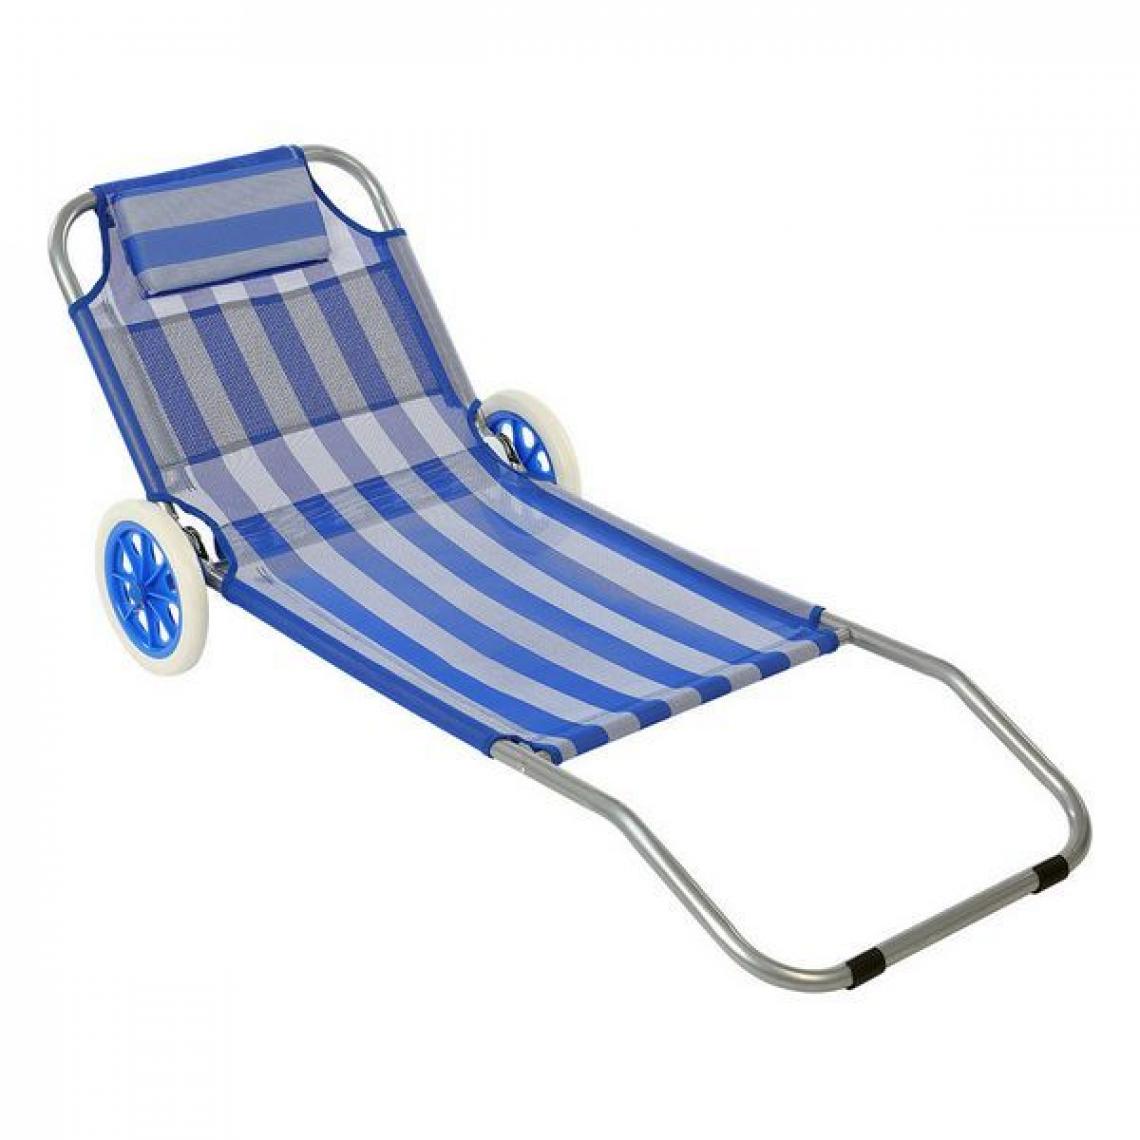 Outdoor - Chaise de plage (150 x 52 x 62 cm) - Transats, chaises longues